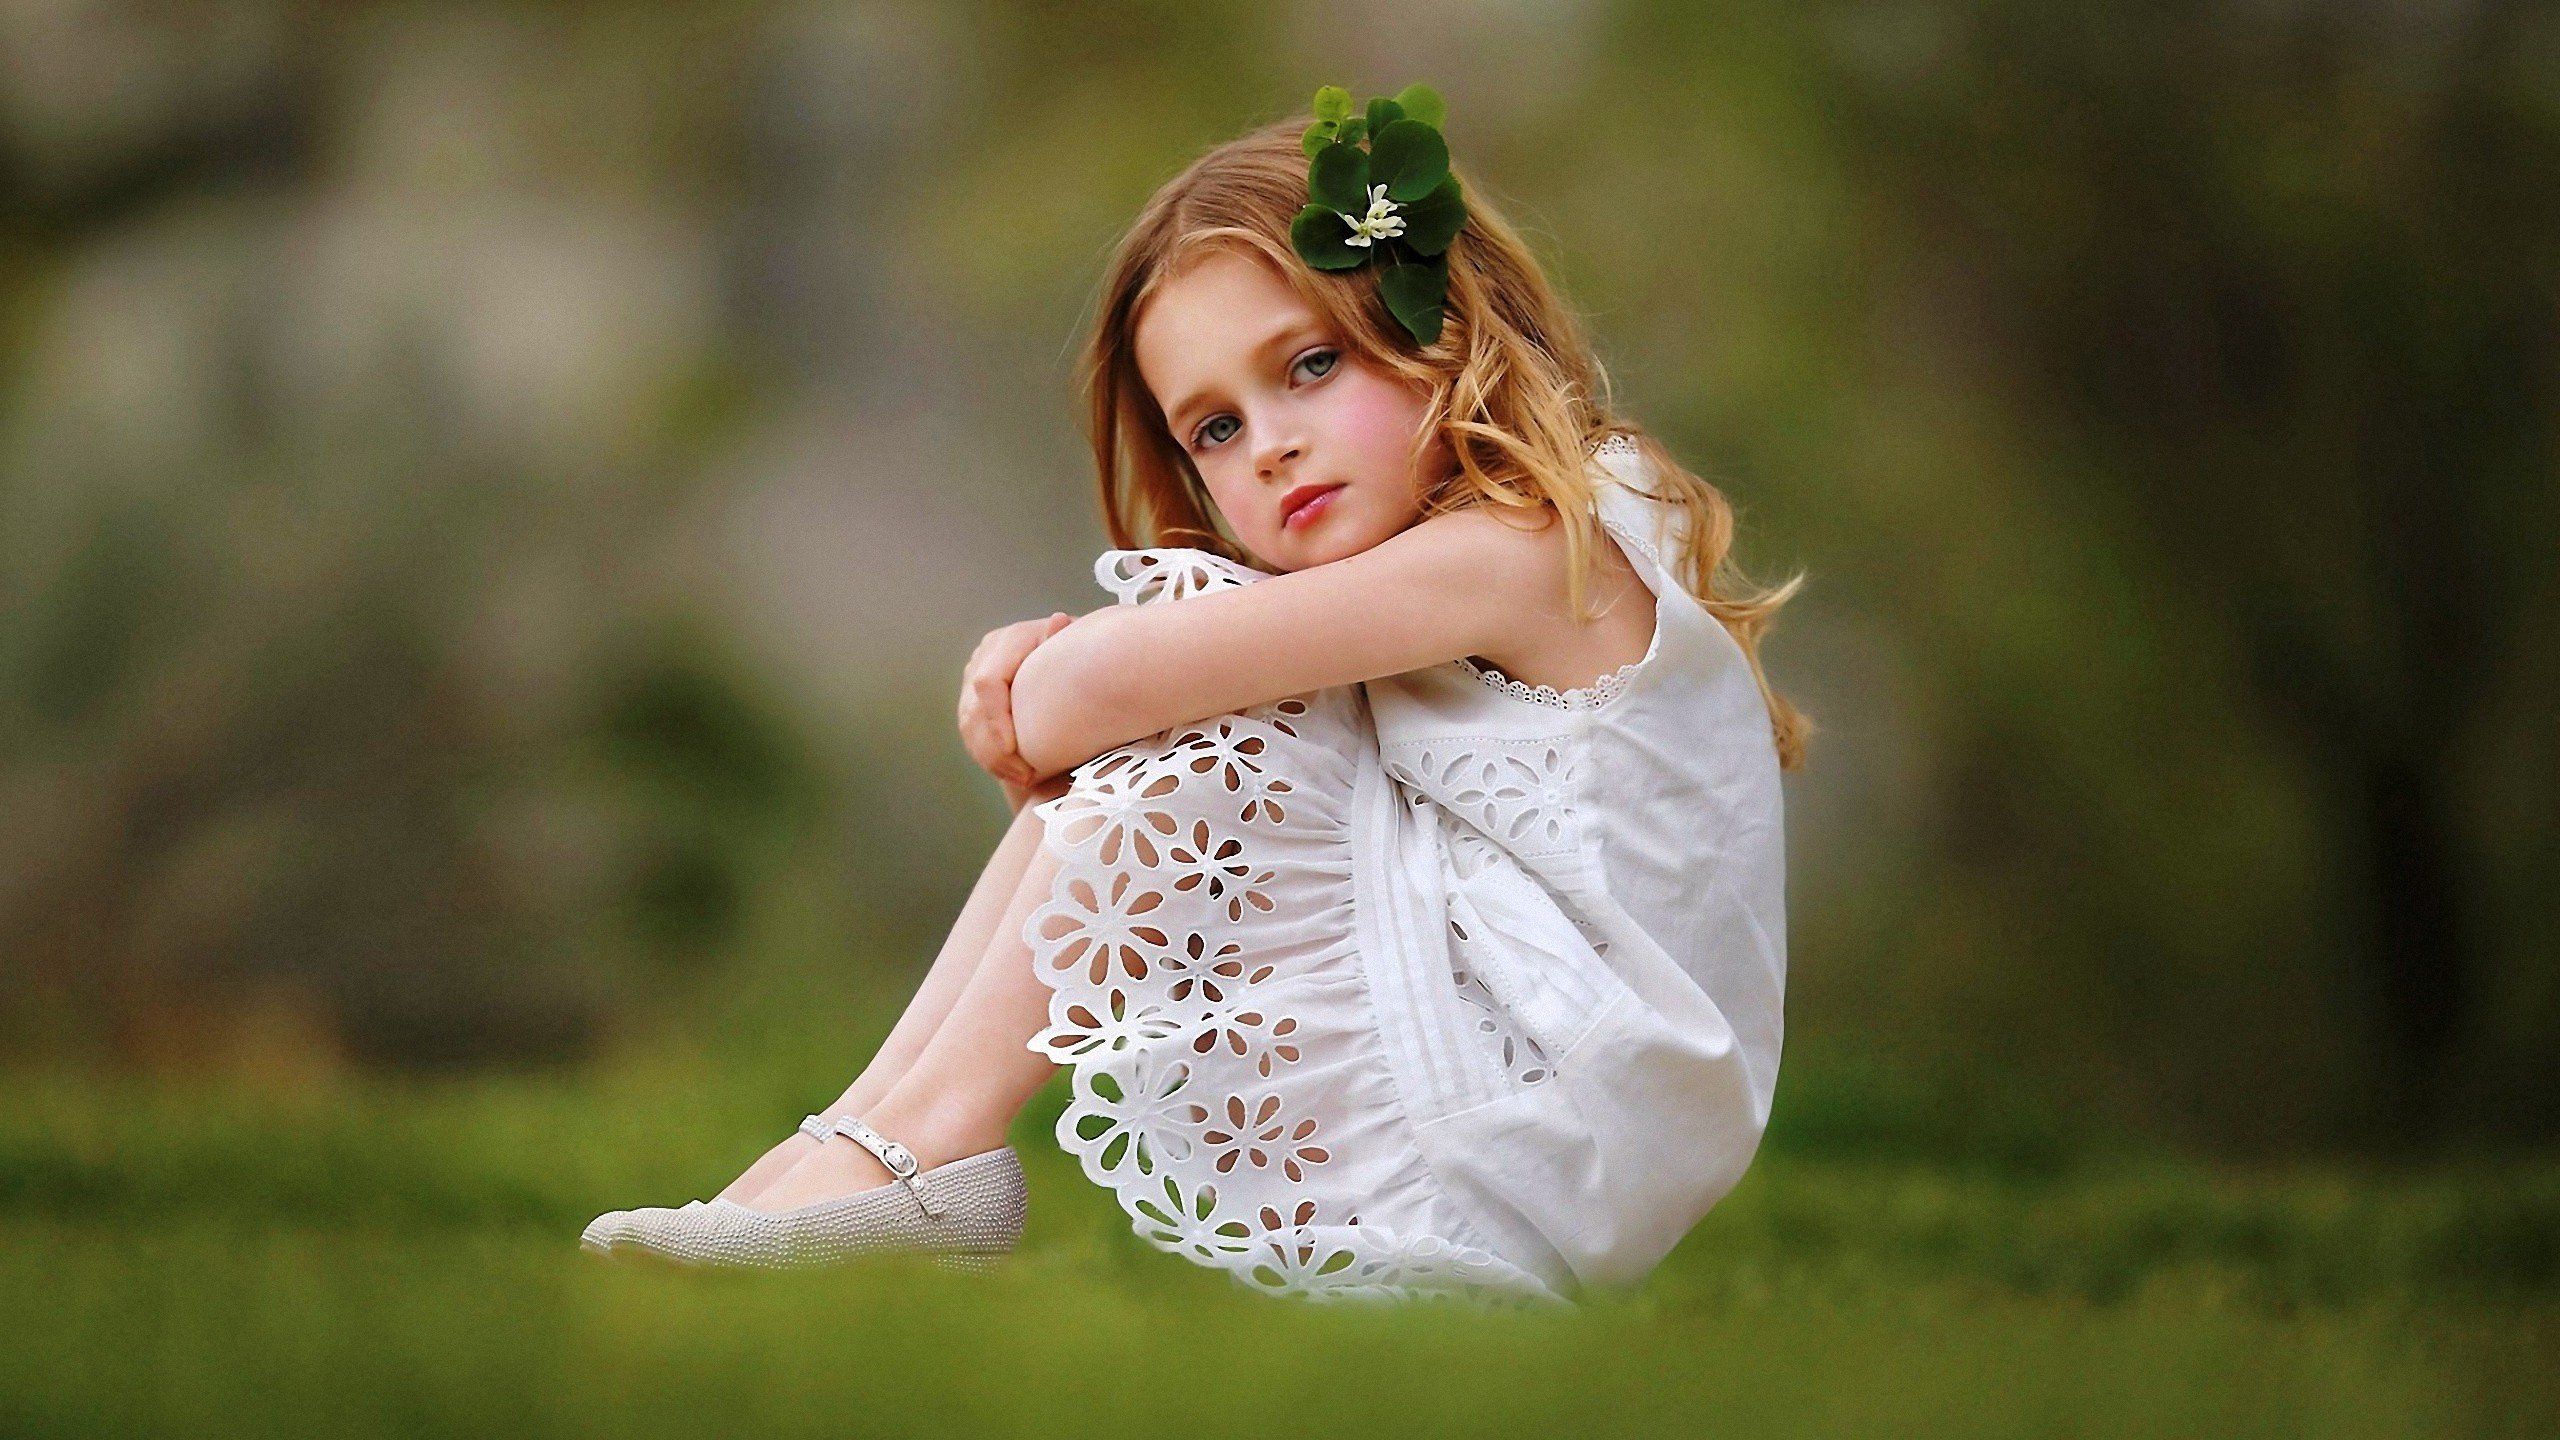 Little girl models 8 12 private. Белое платье для девочки. Маленькие девчонки. Фотосессия в белом платье на природе. Девочка в платье сидит.